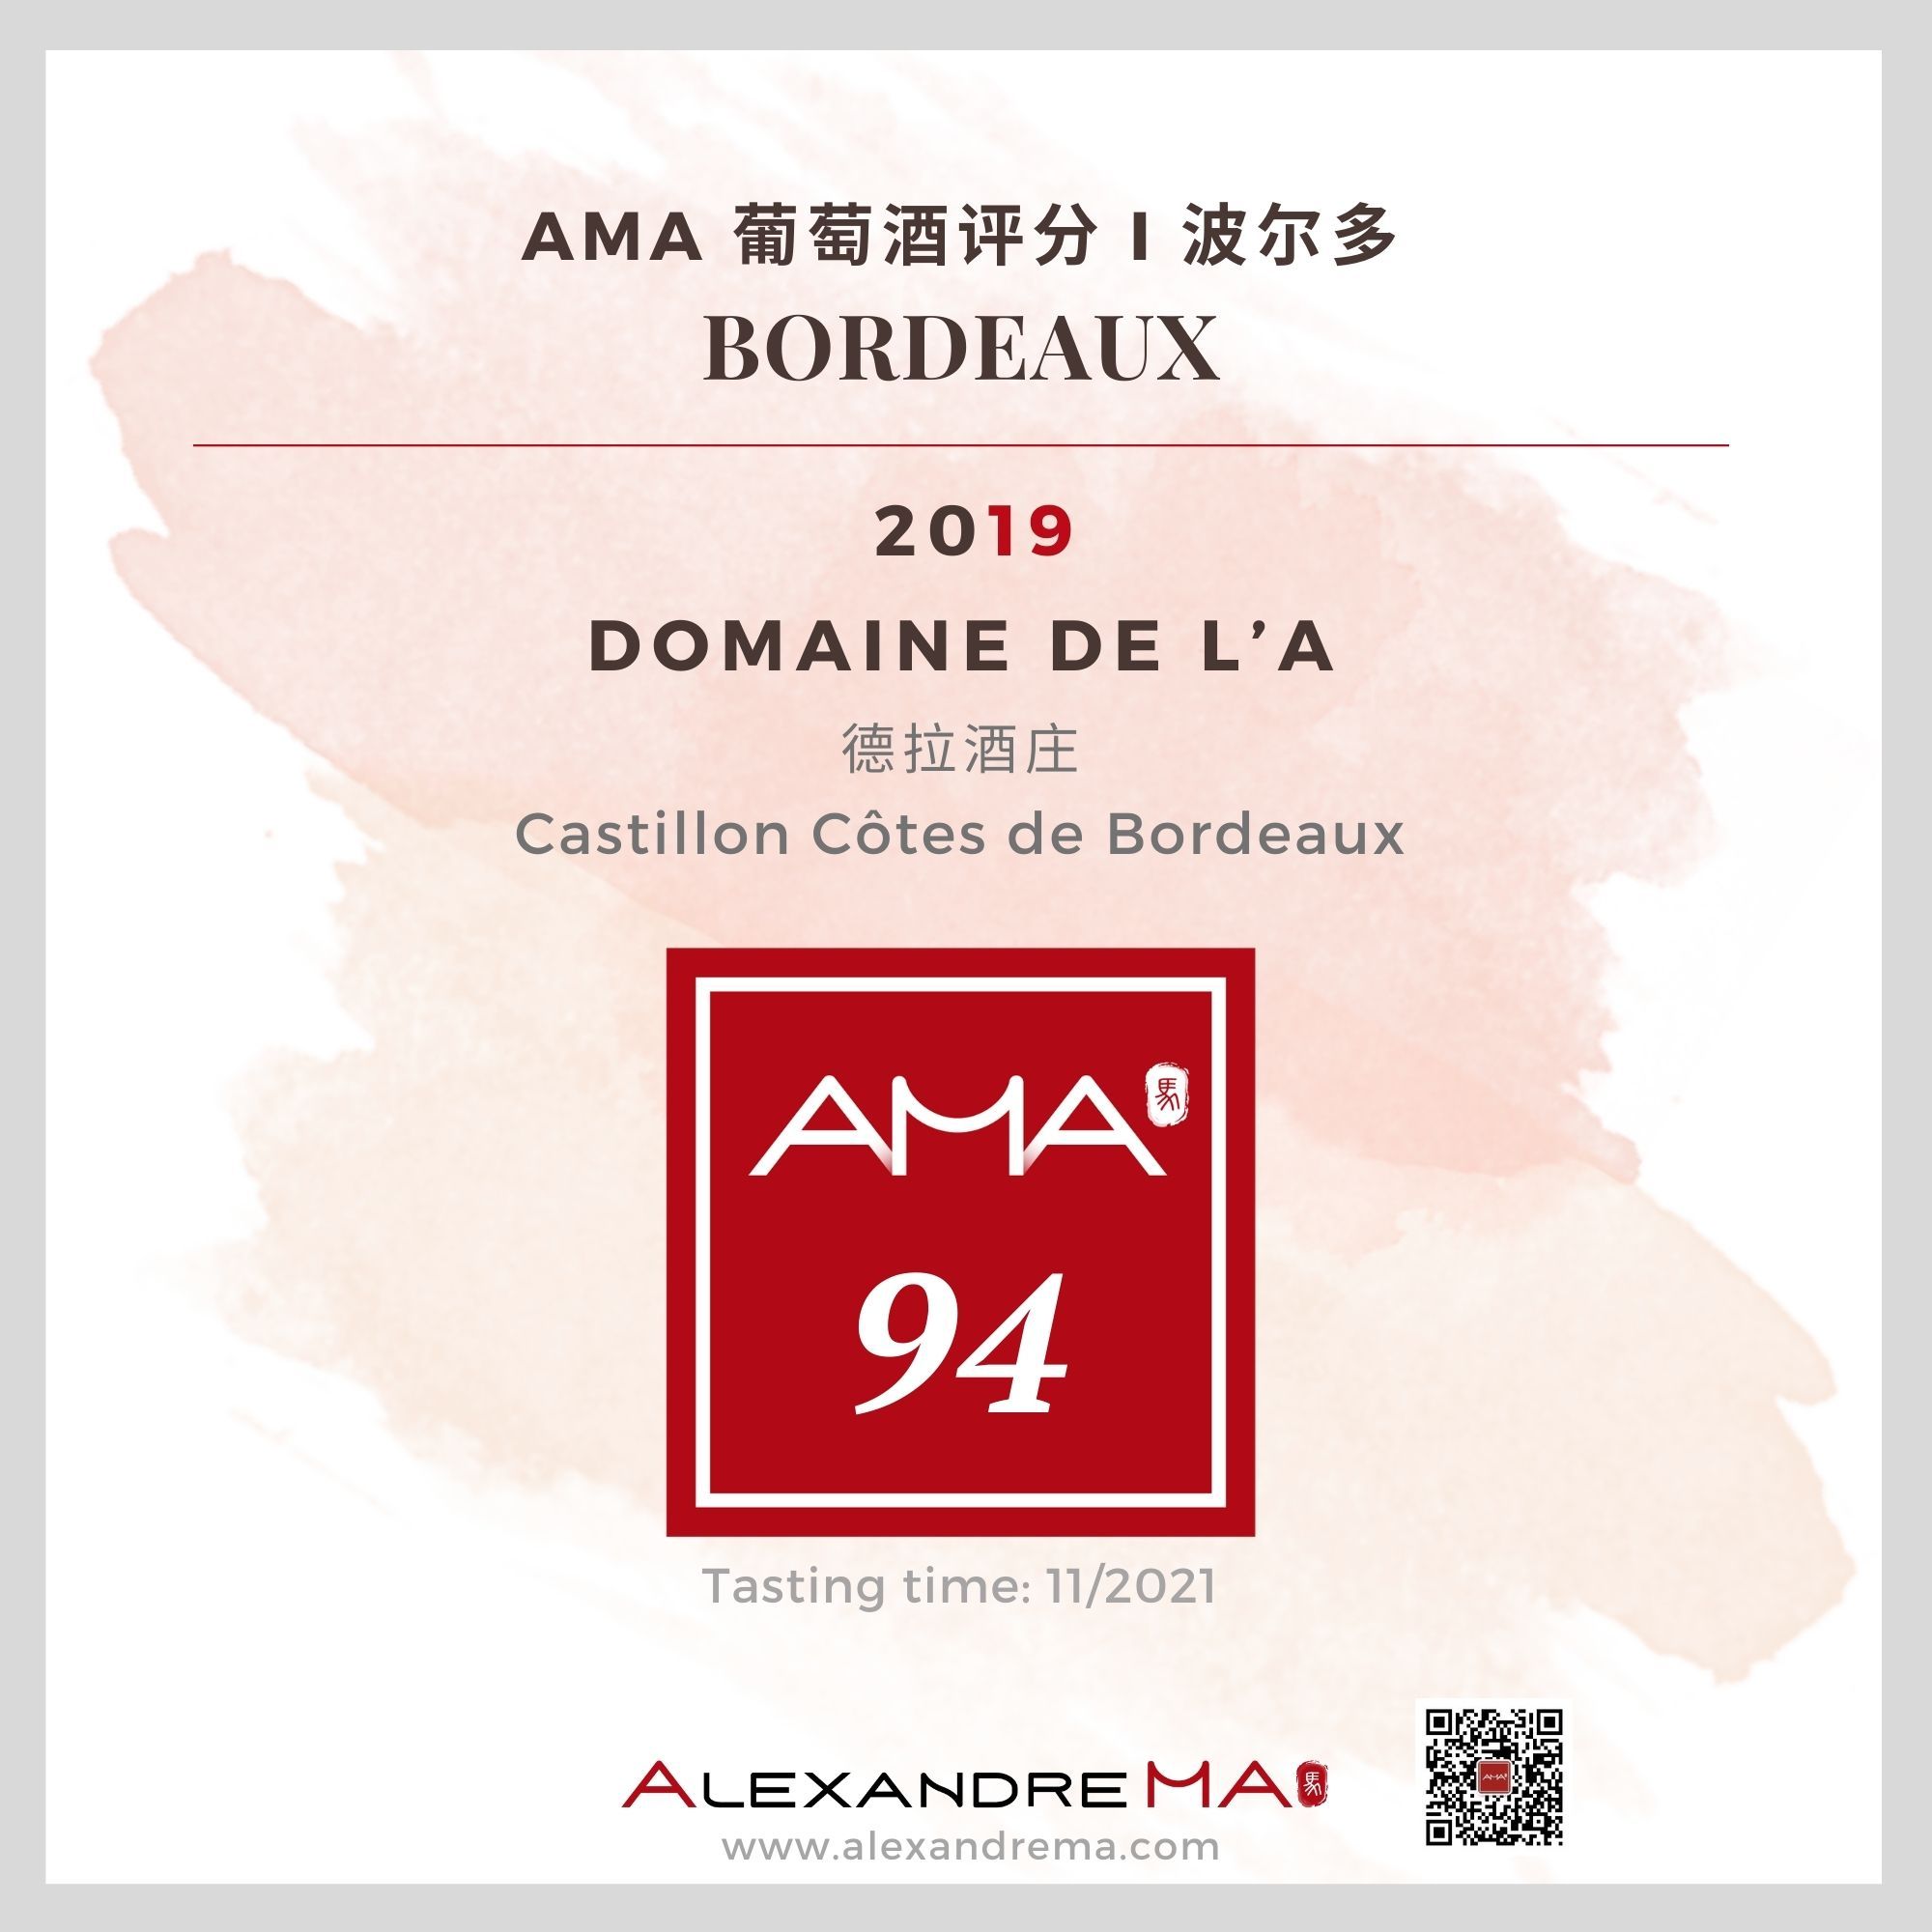 Domaine de l’A 2019 德拉酒庄 - Alexandre Ma